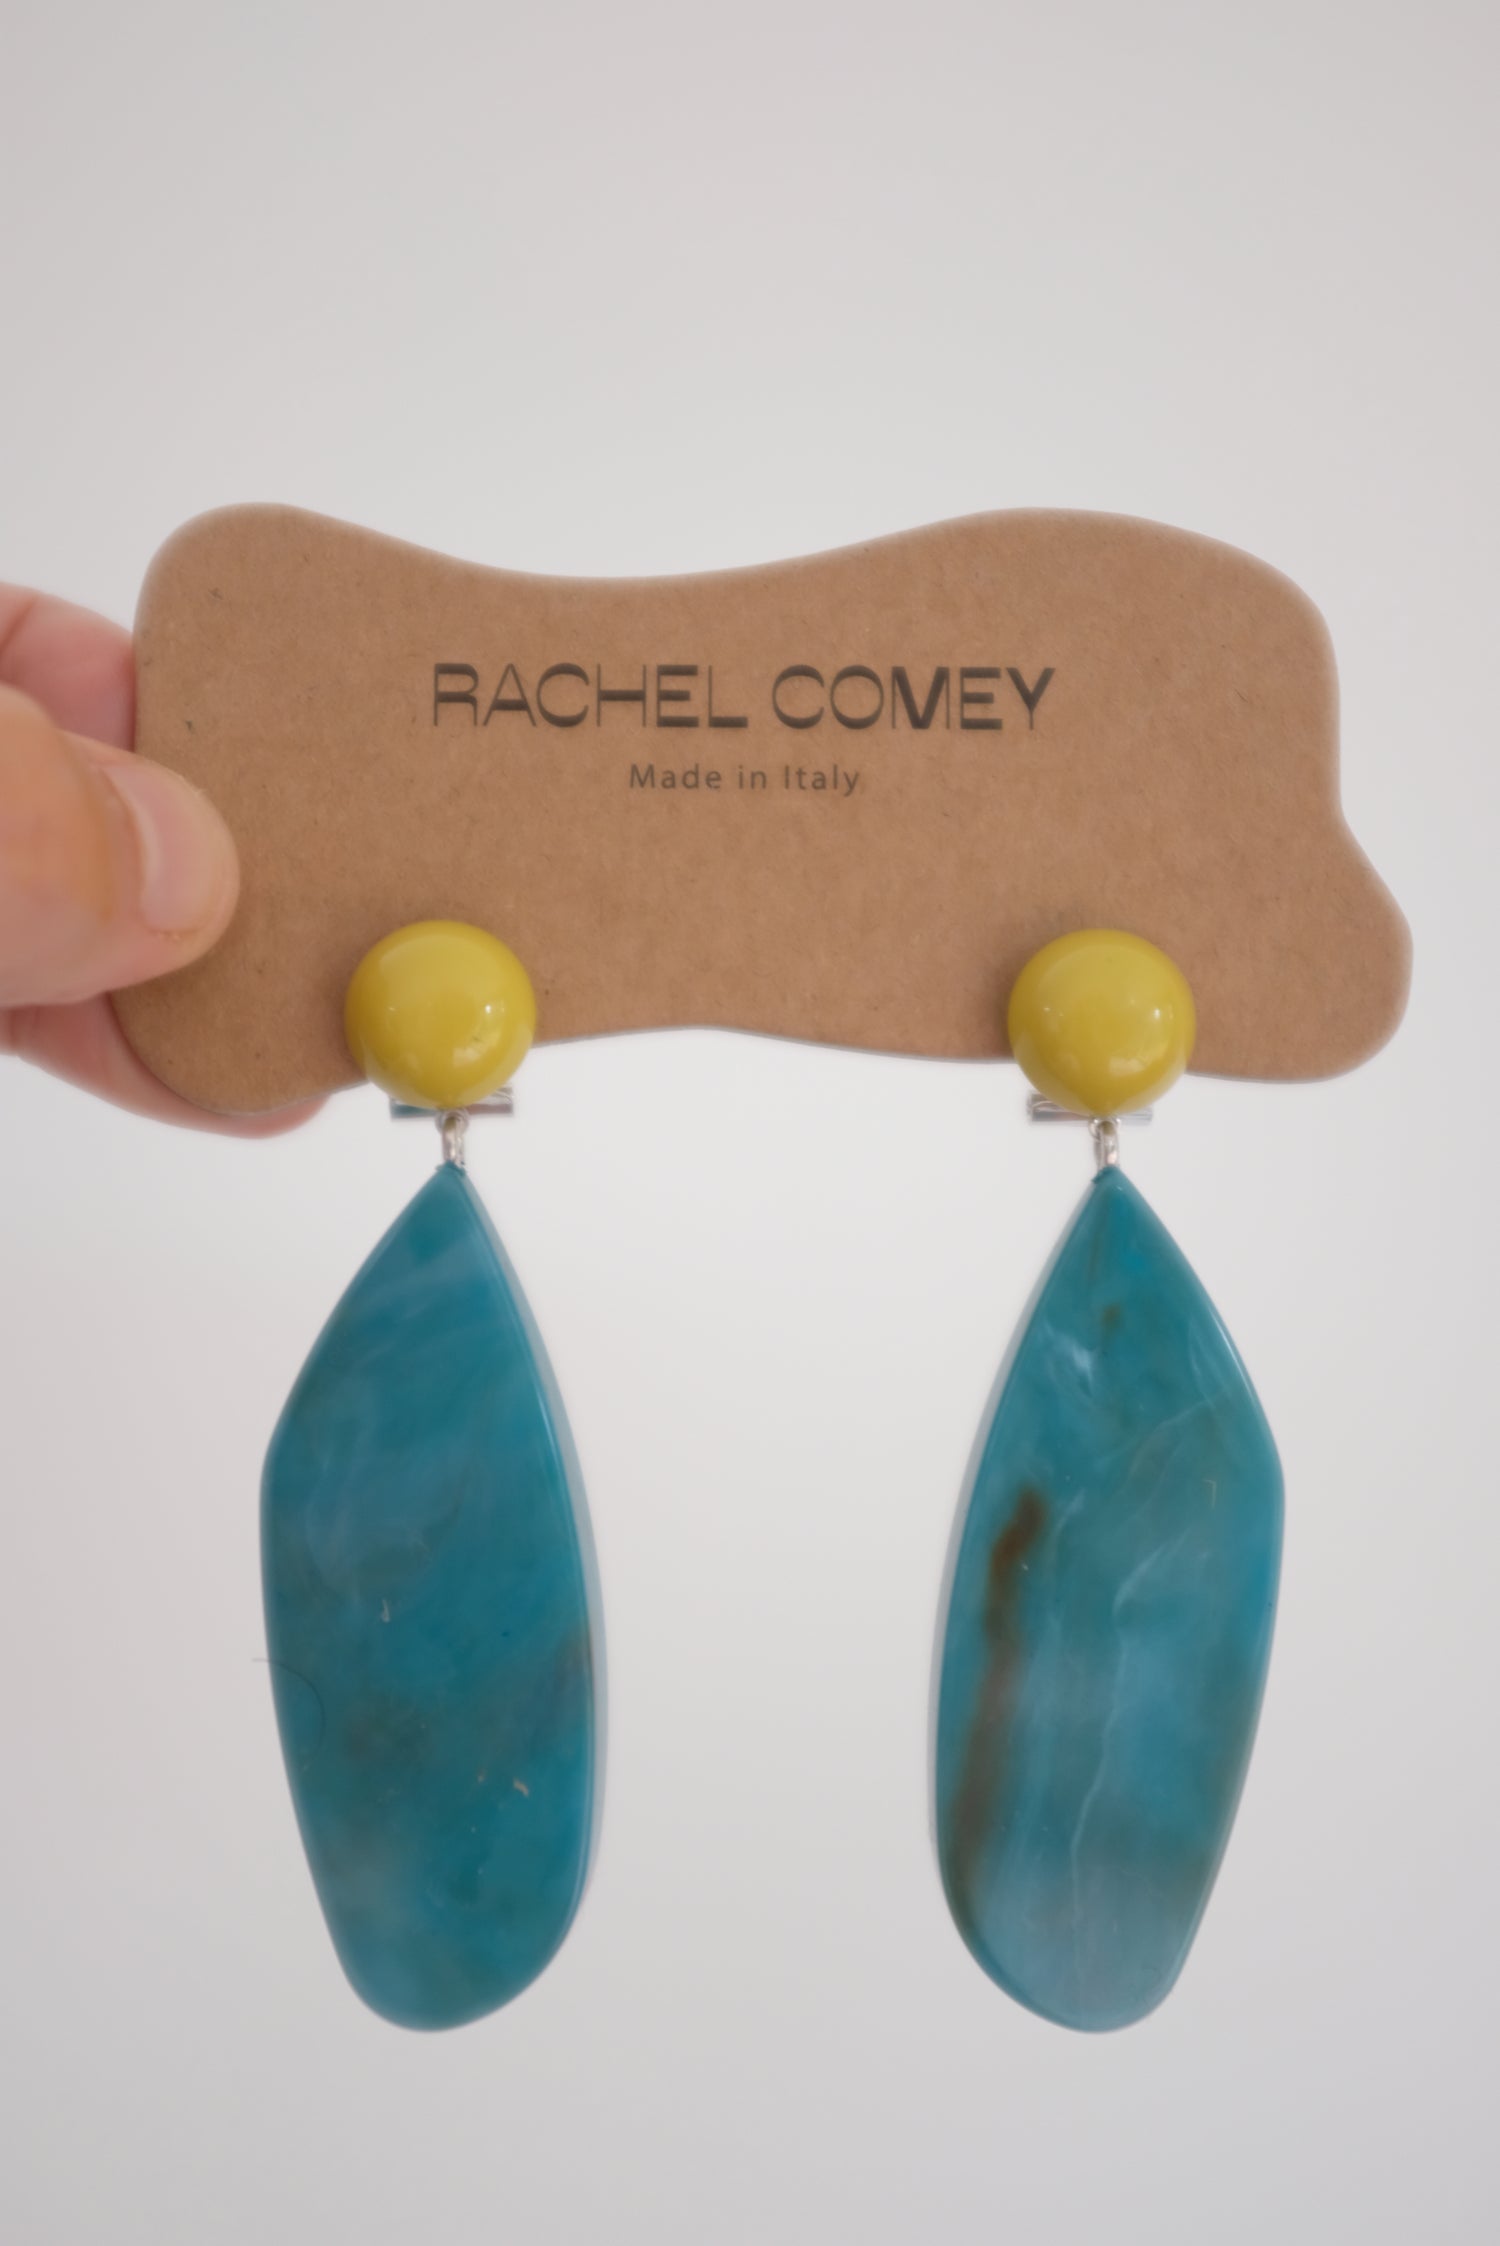 Rachel Comey Splitleap Earrings